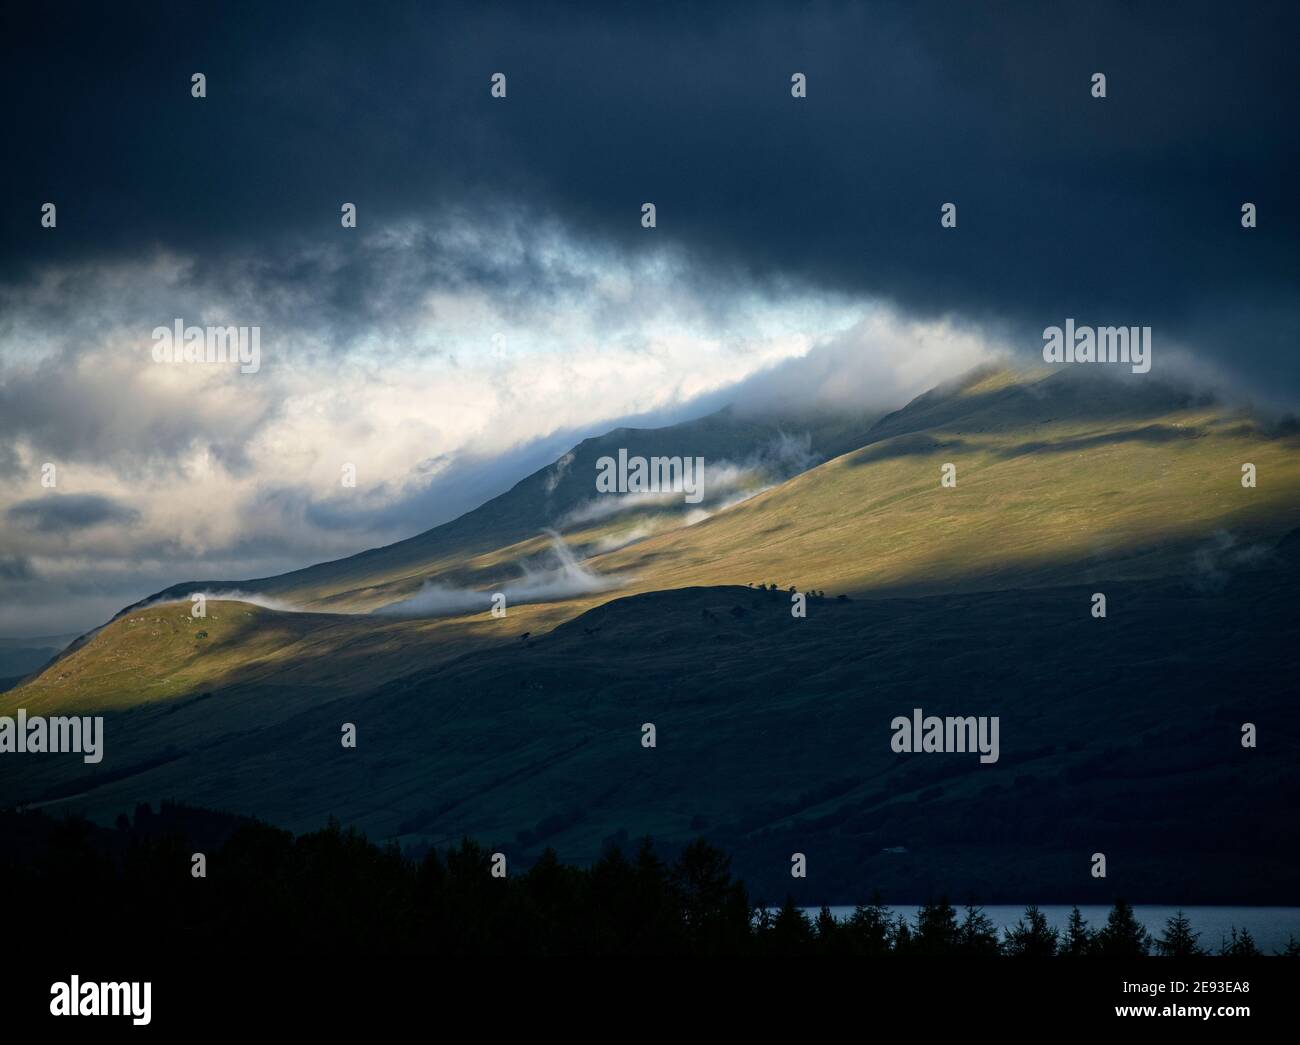 Cloud basso su ben Lawers Mountain, Scozia Foto Stock